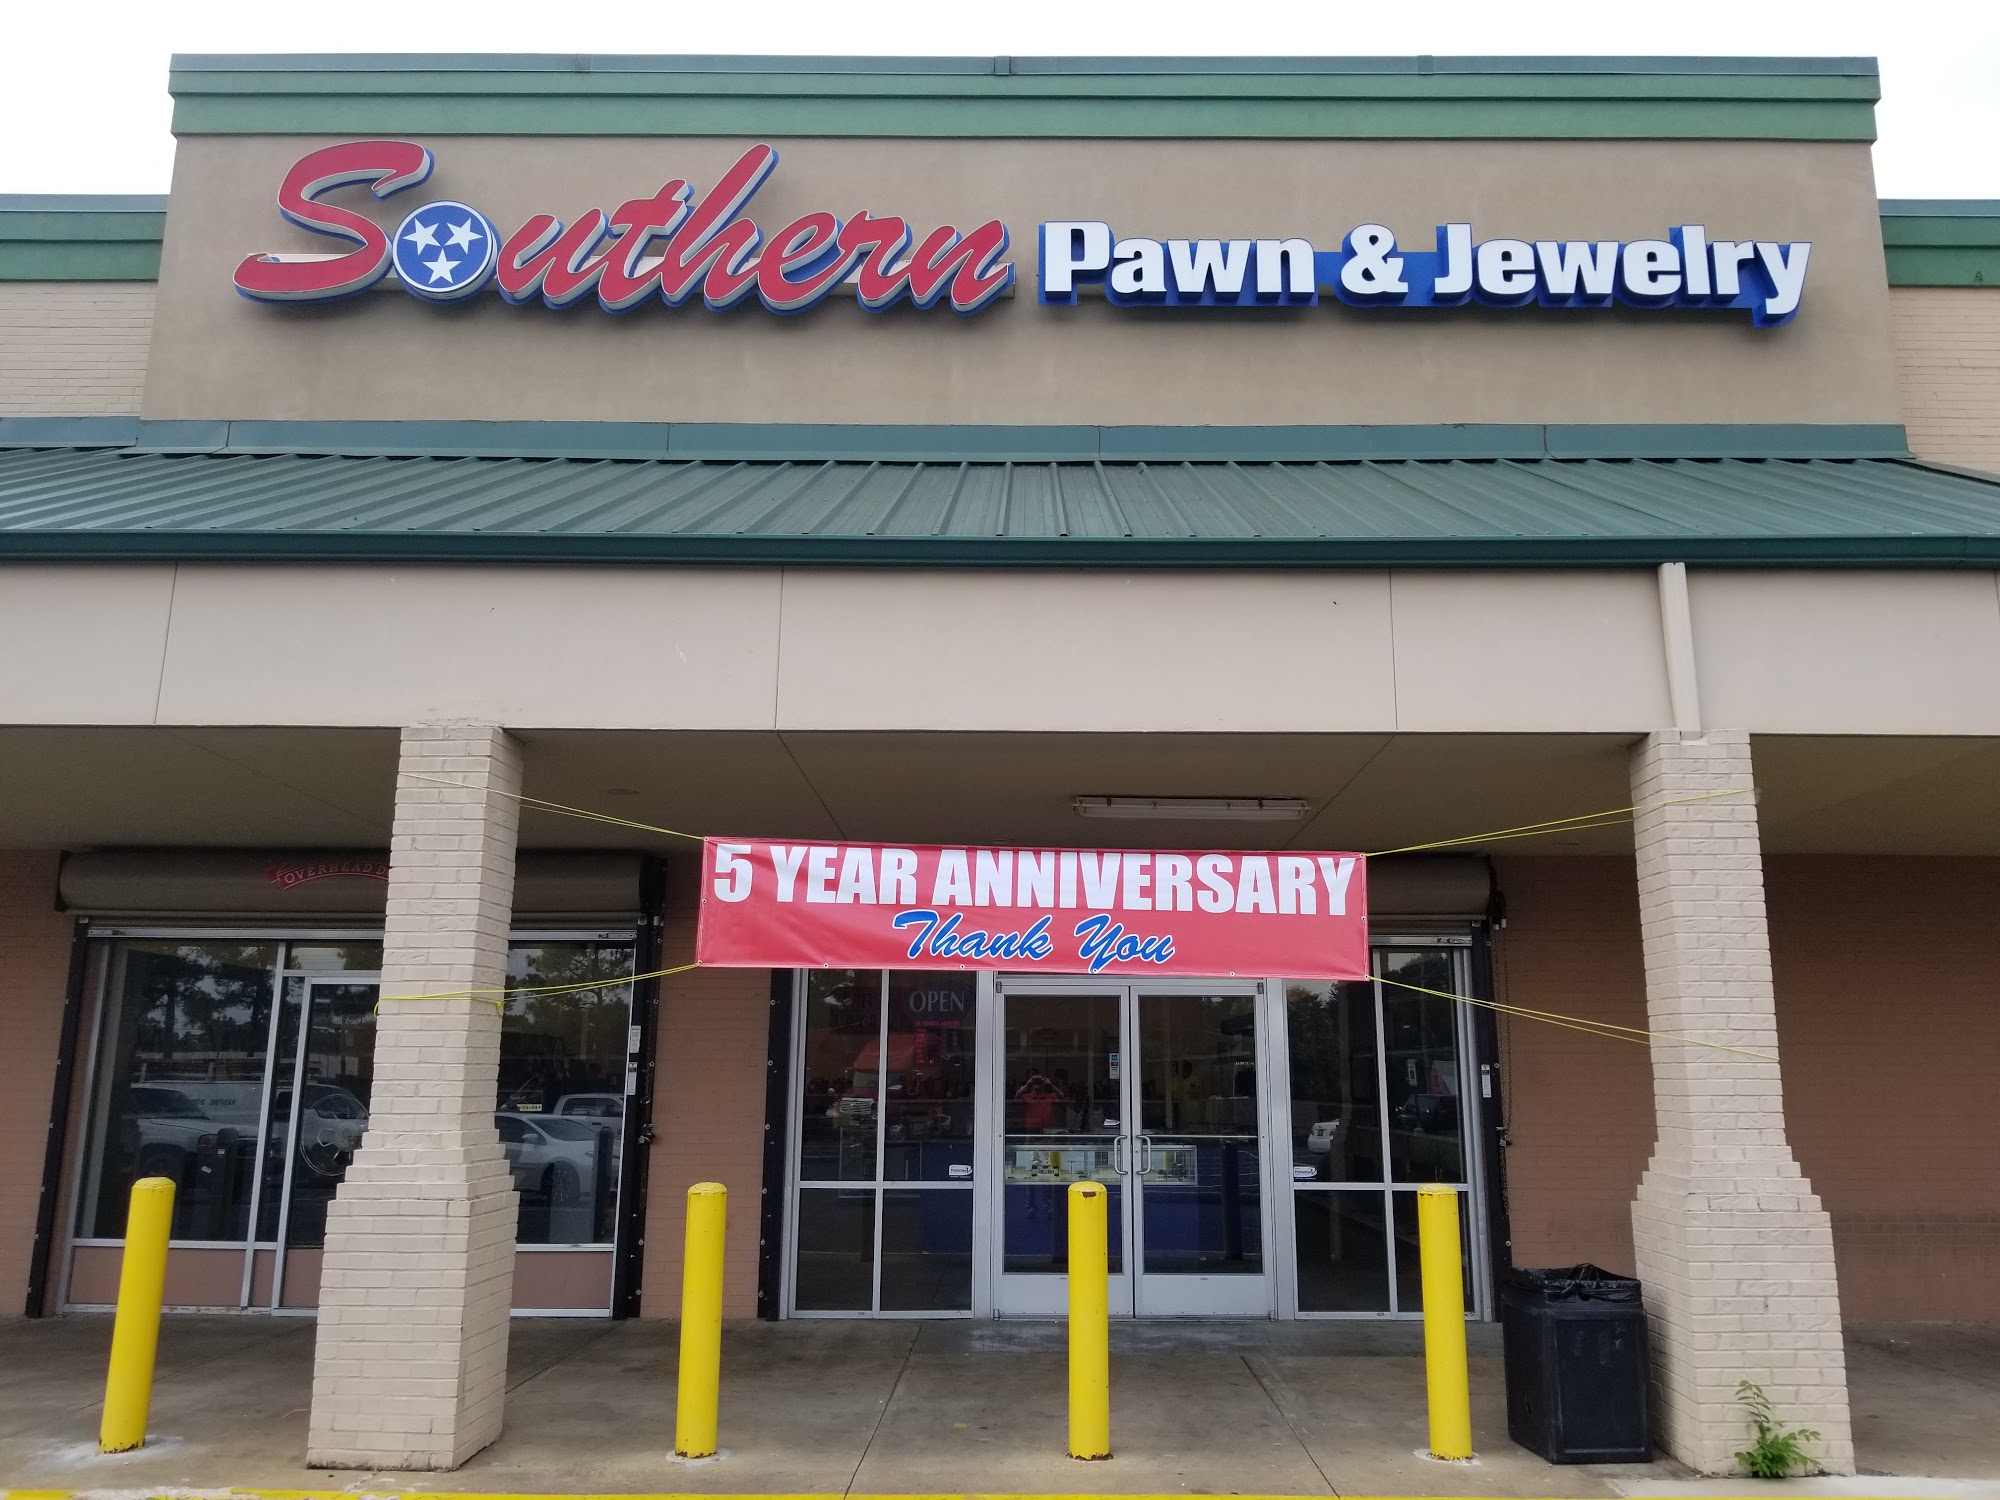 Southern Pawn & Jewelry